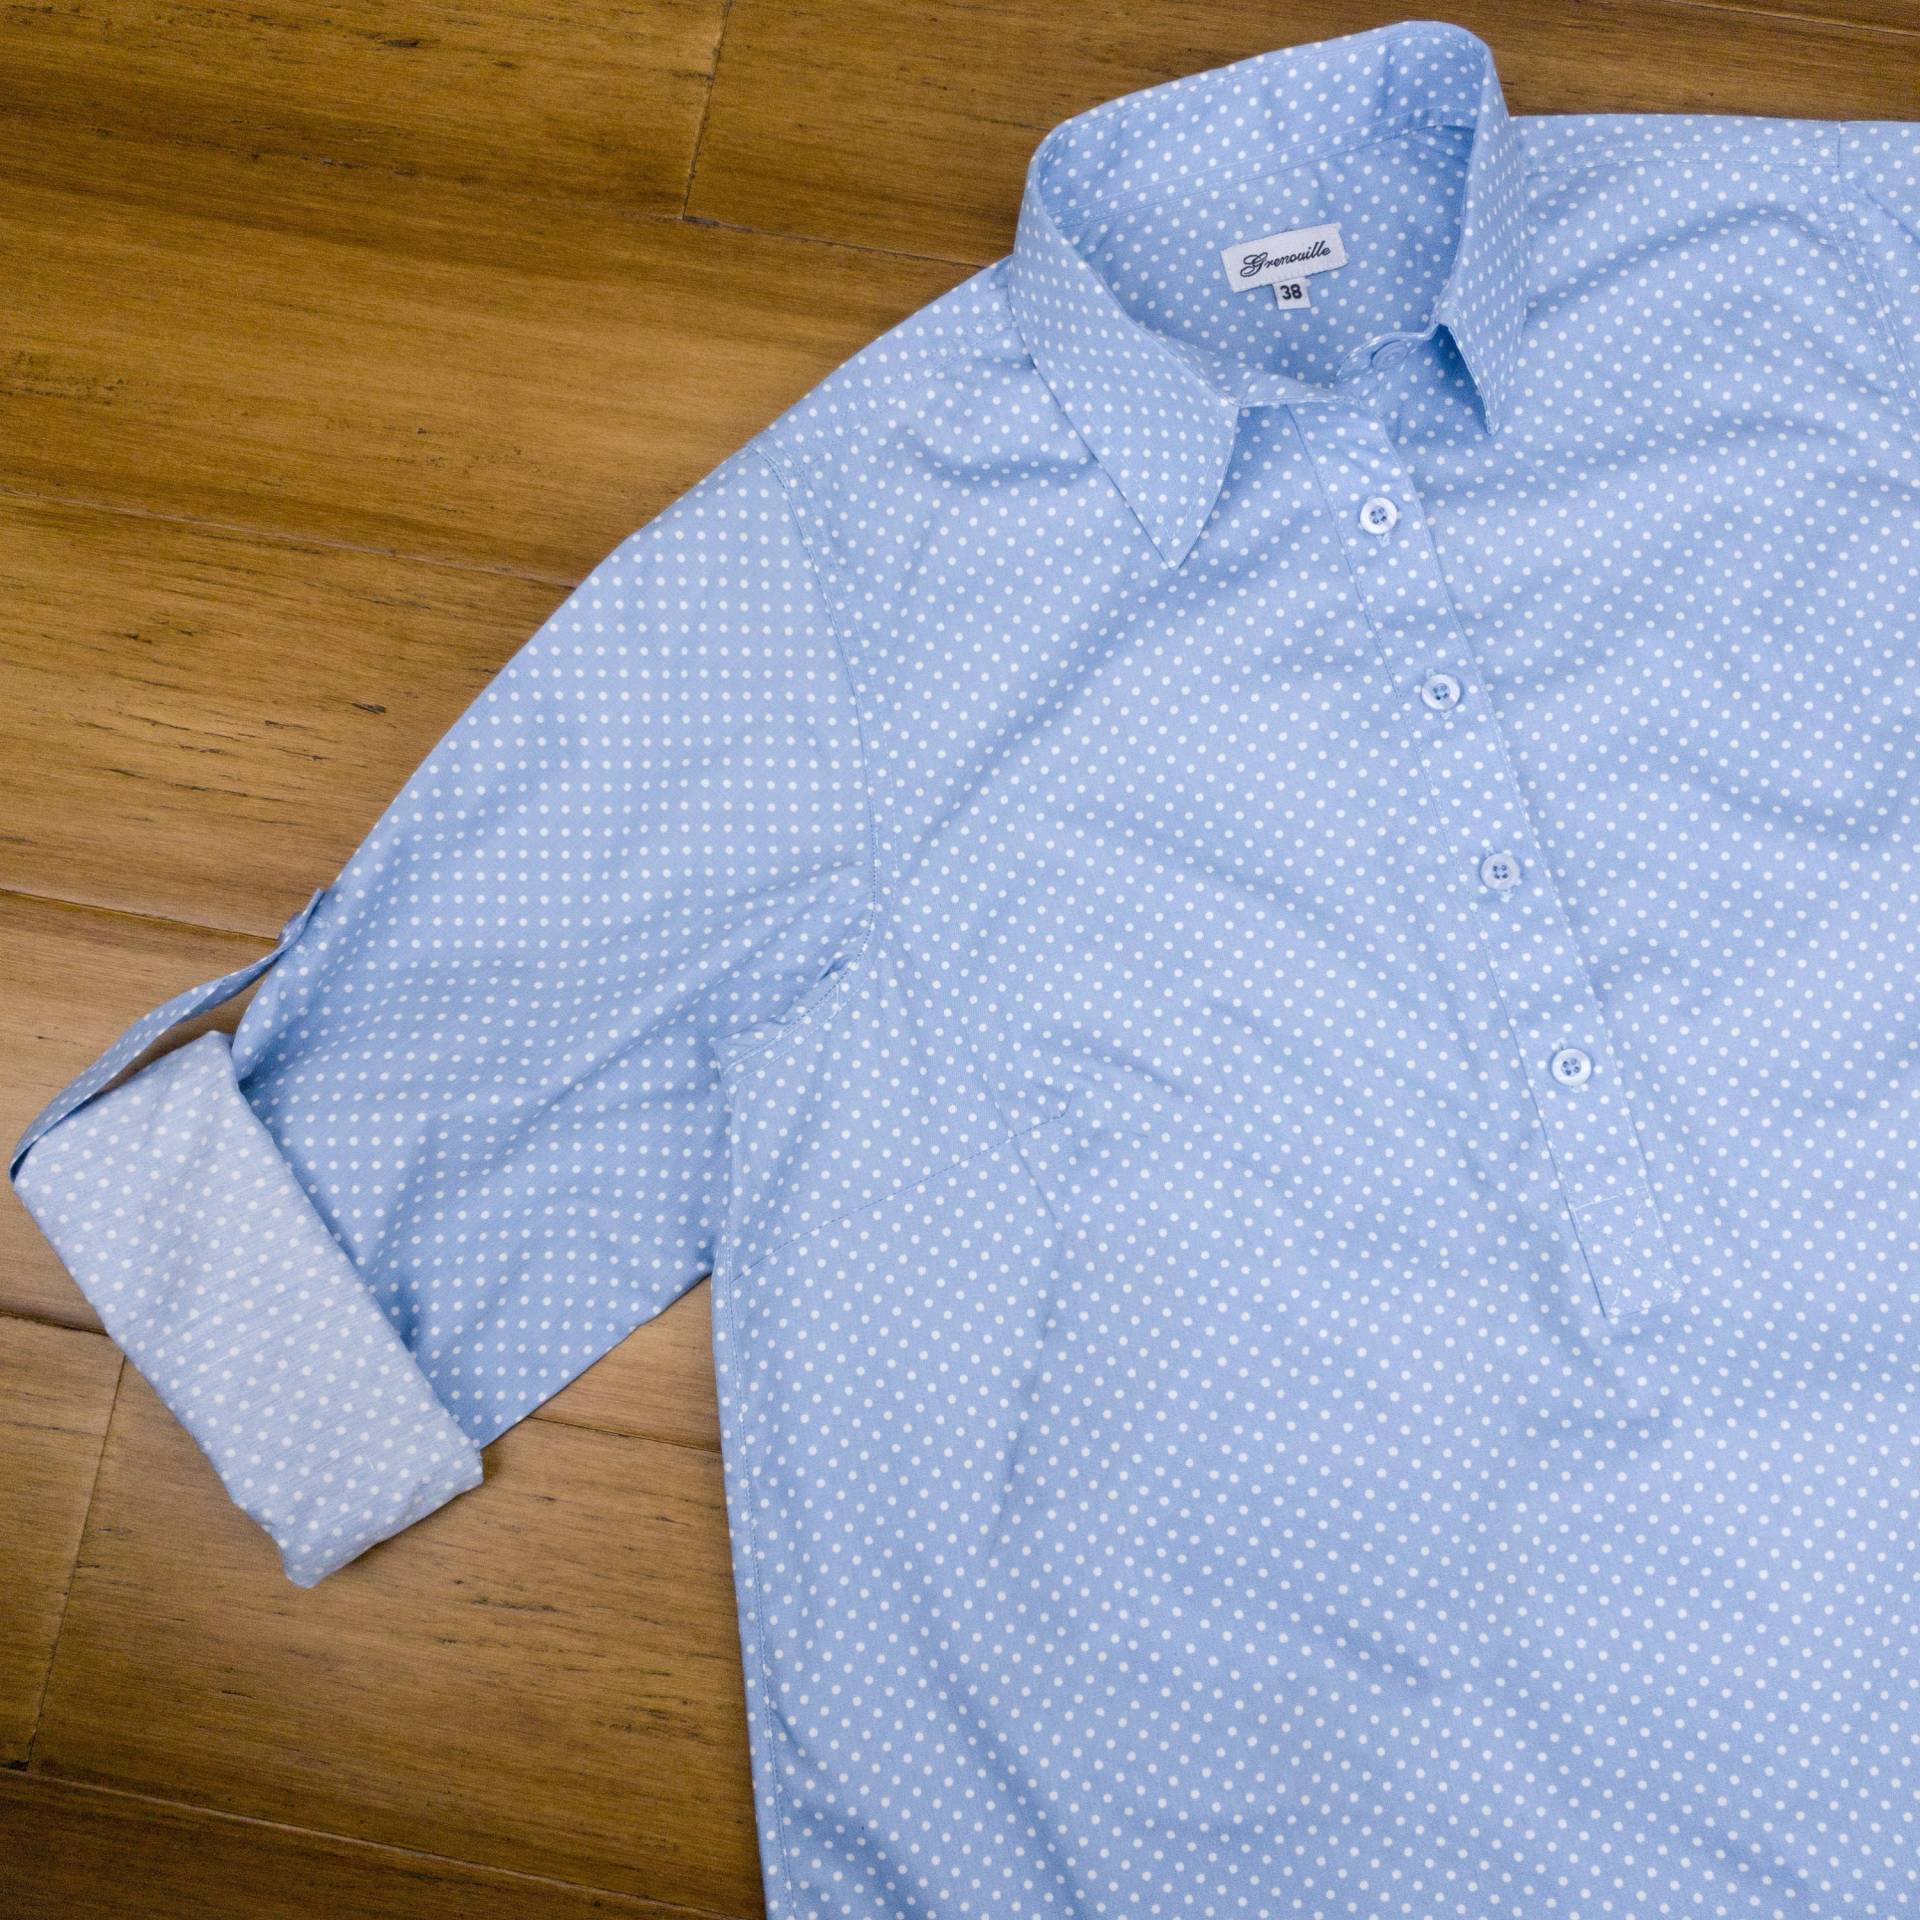 Grenouille Damen Langarm Pastell Blau Und Weiß Spot Kragen Tunika Shirt | Grenouille-Hemden Muttertag/Geburtstagsgeschenk von SalamanderShirts